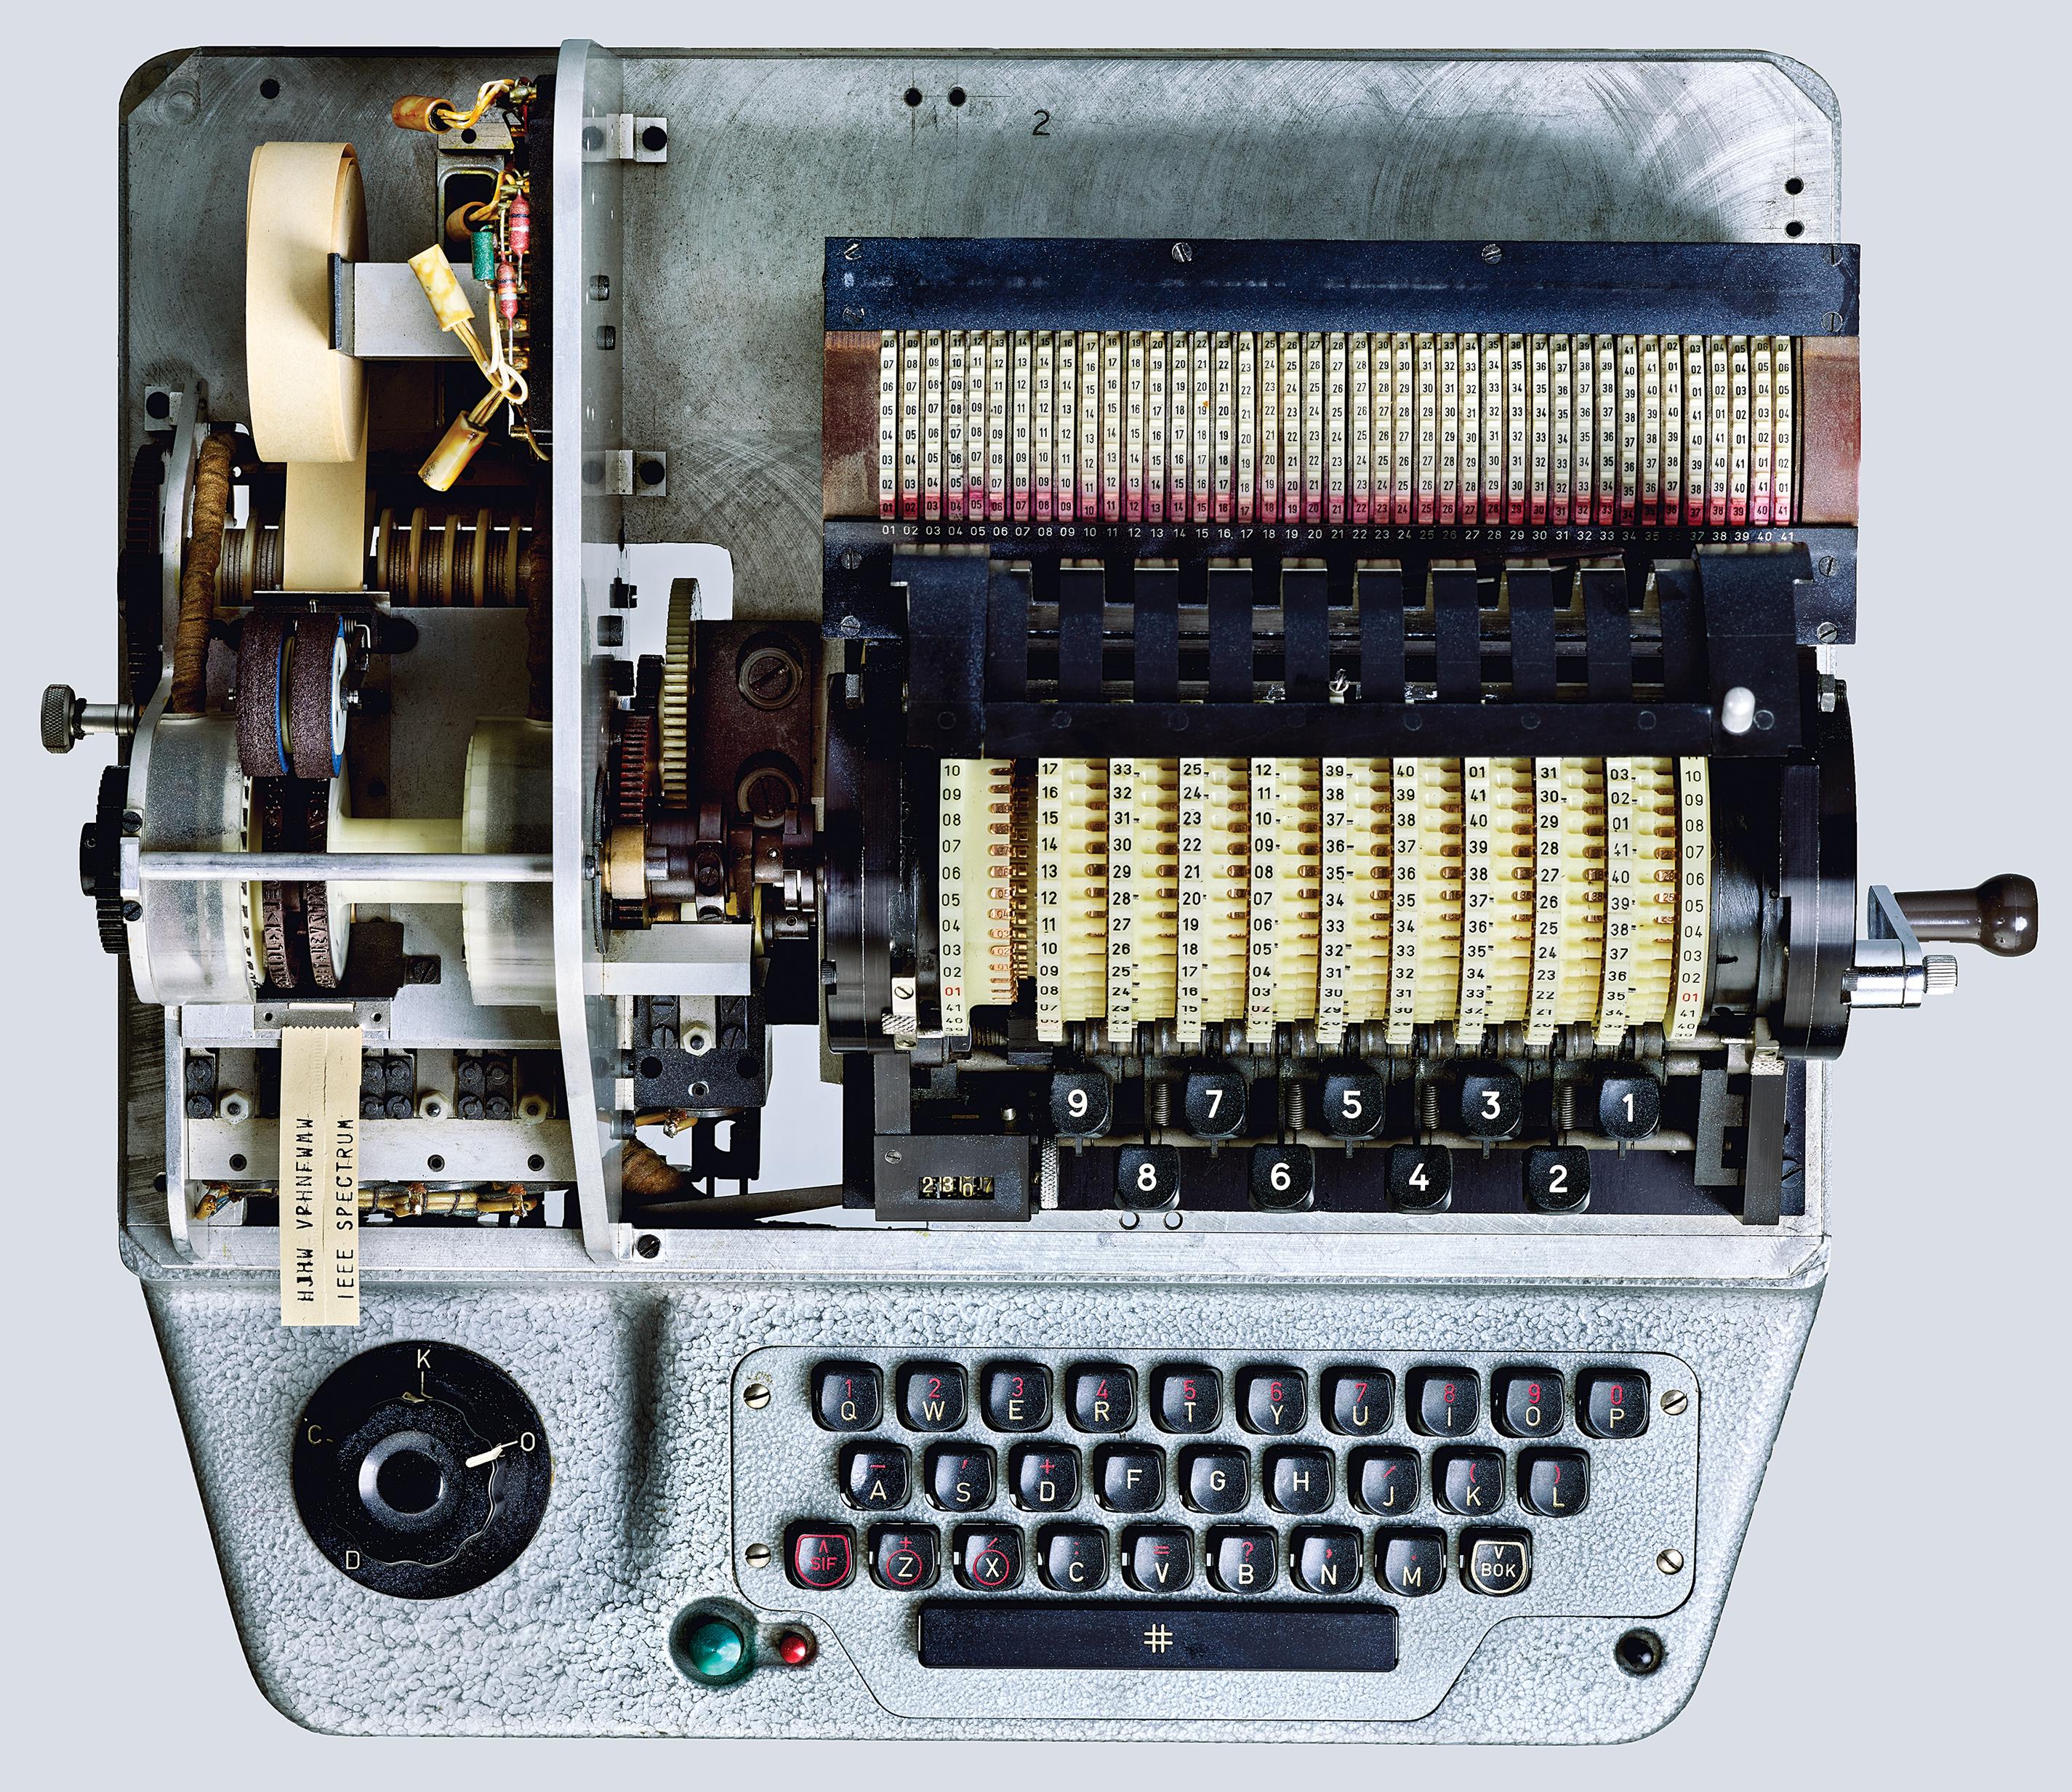 This typewriter keyboard will actually make you work faster » Gadget Flow